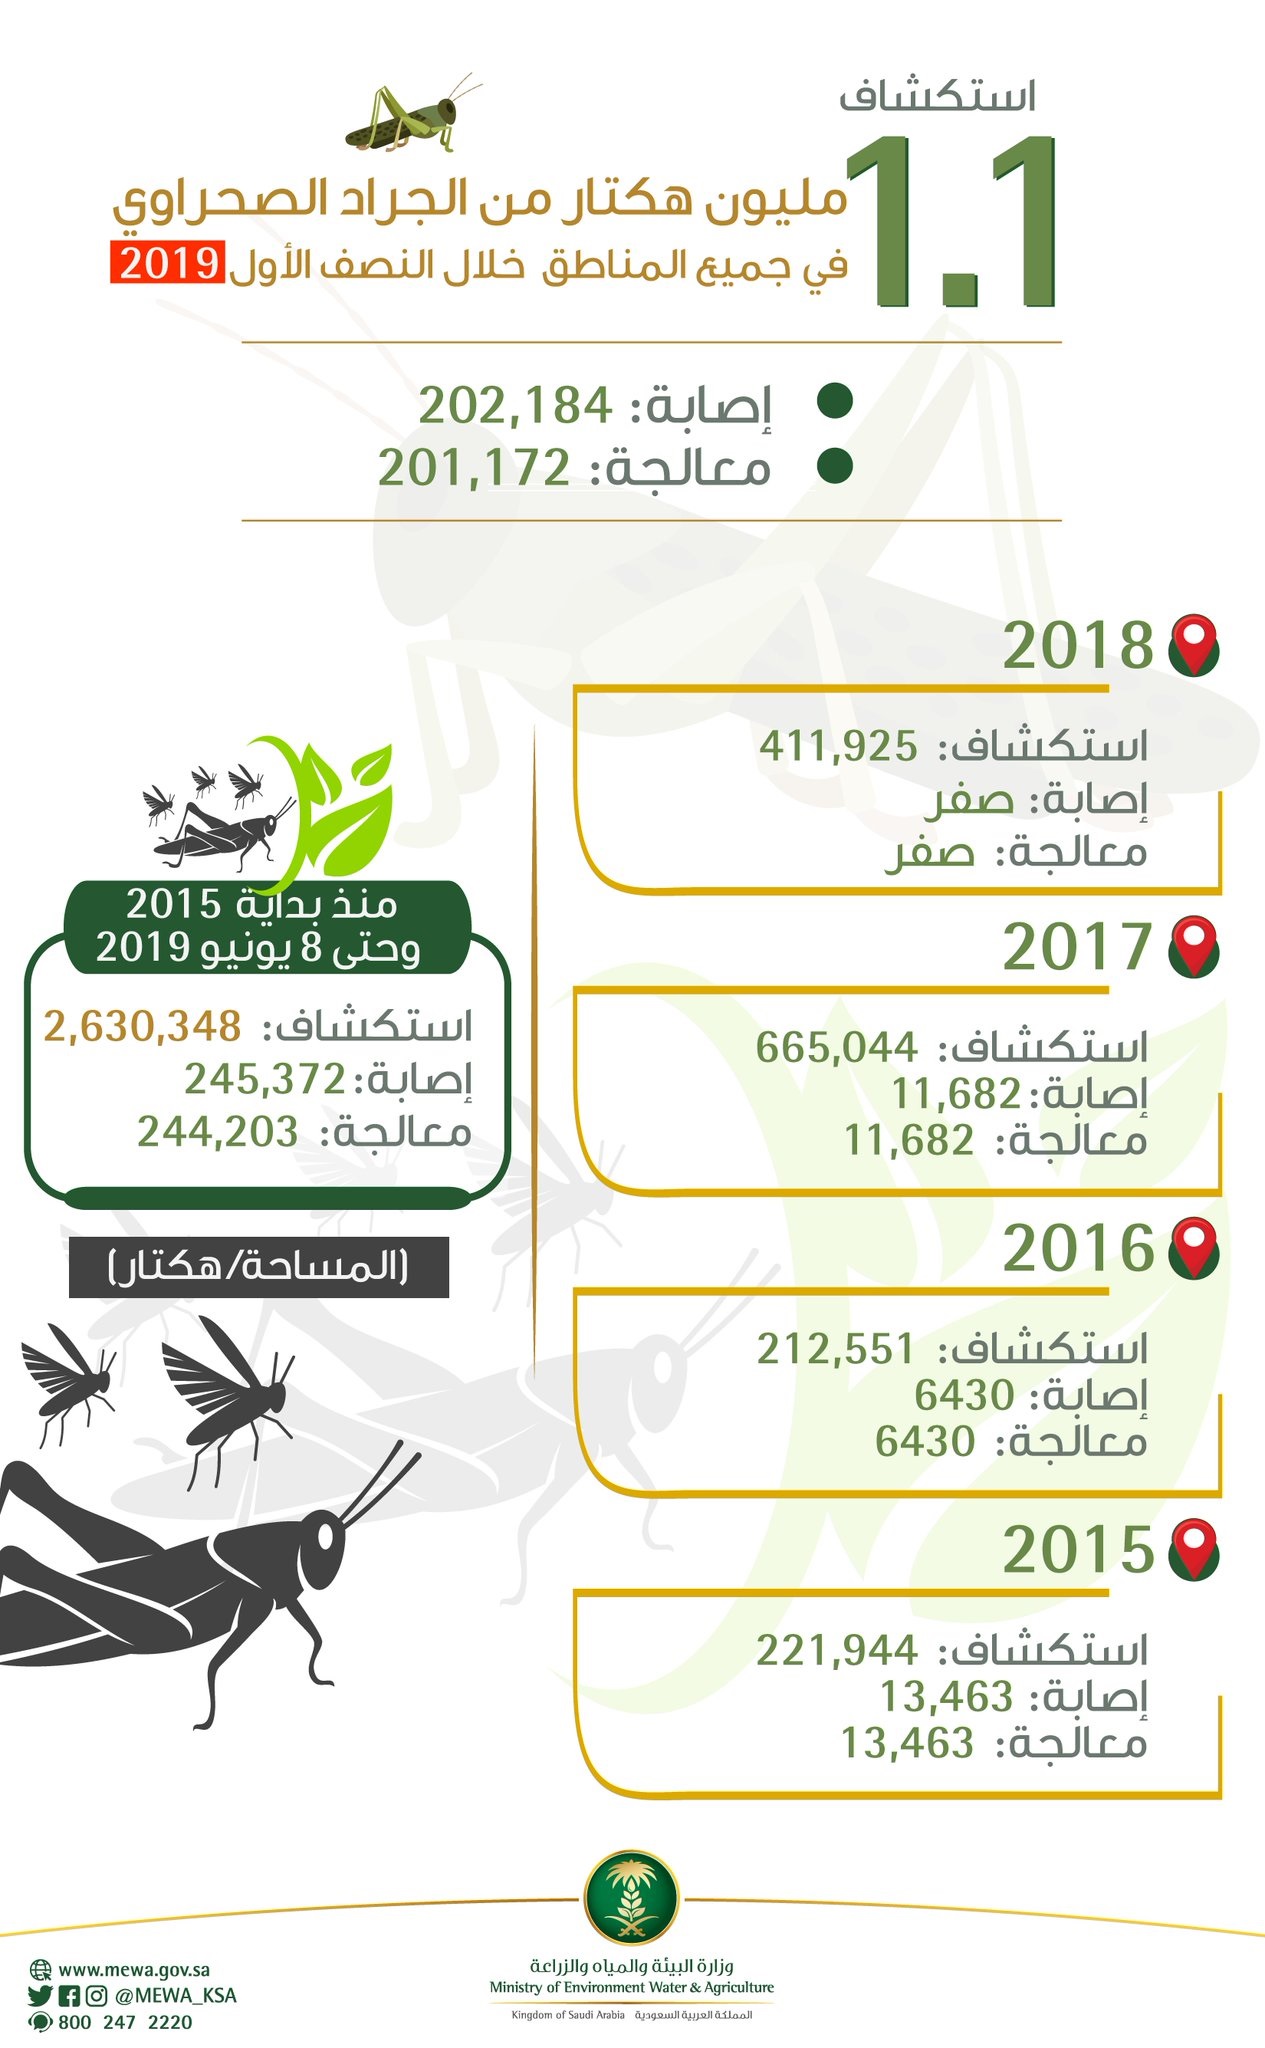 استكشاف 1.1 مليون هيكتار من الجراد الصحراوي في جميع مناطق المملكة خلال النصف الأول من 2019